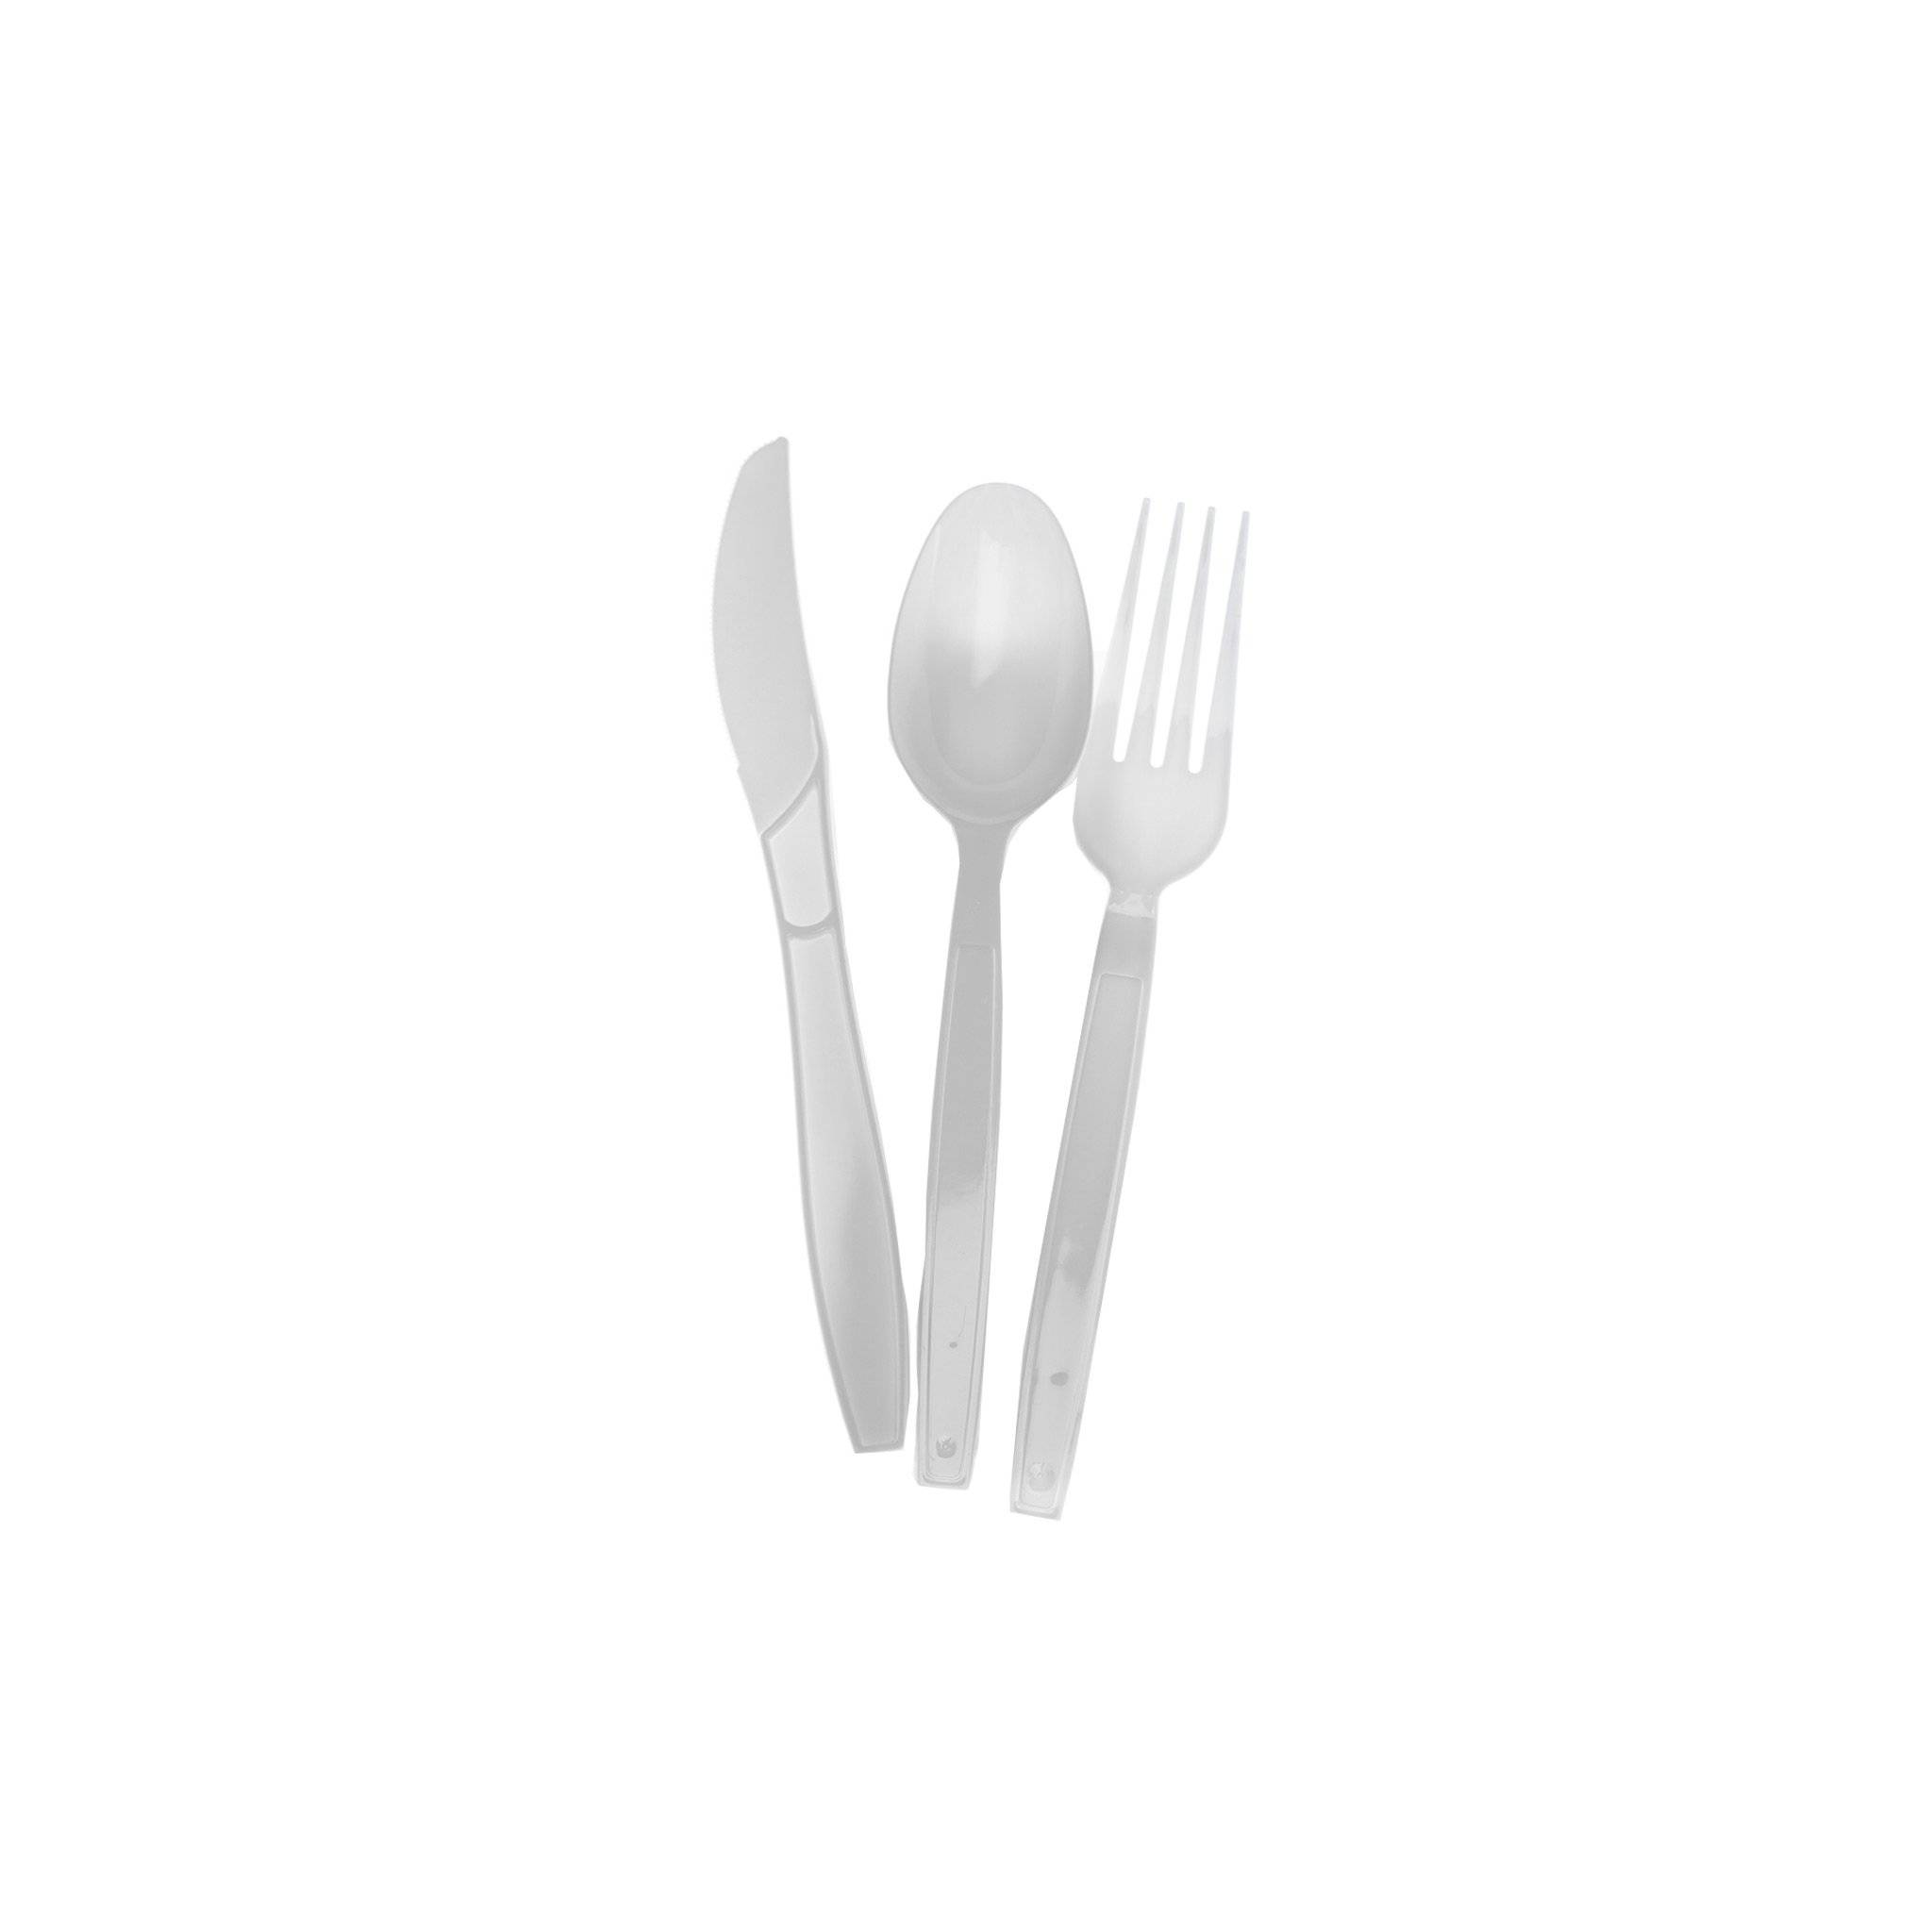 White Heavy Duty Cutlery Set (Spoon/Fork/Knife/Napkin)